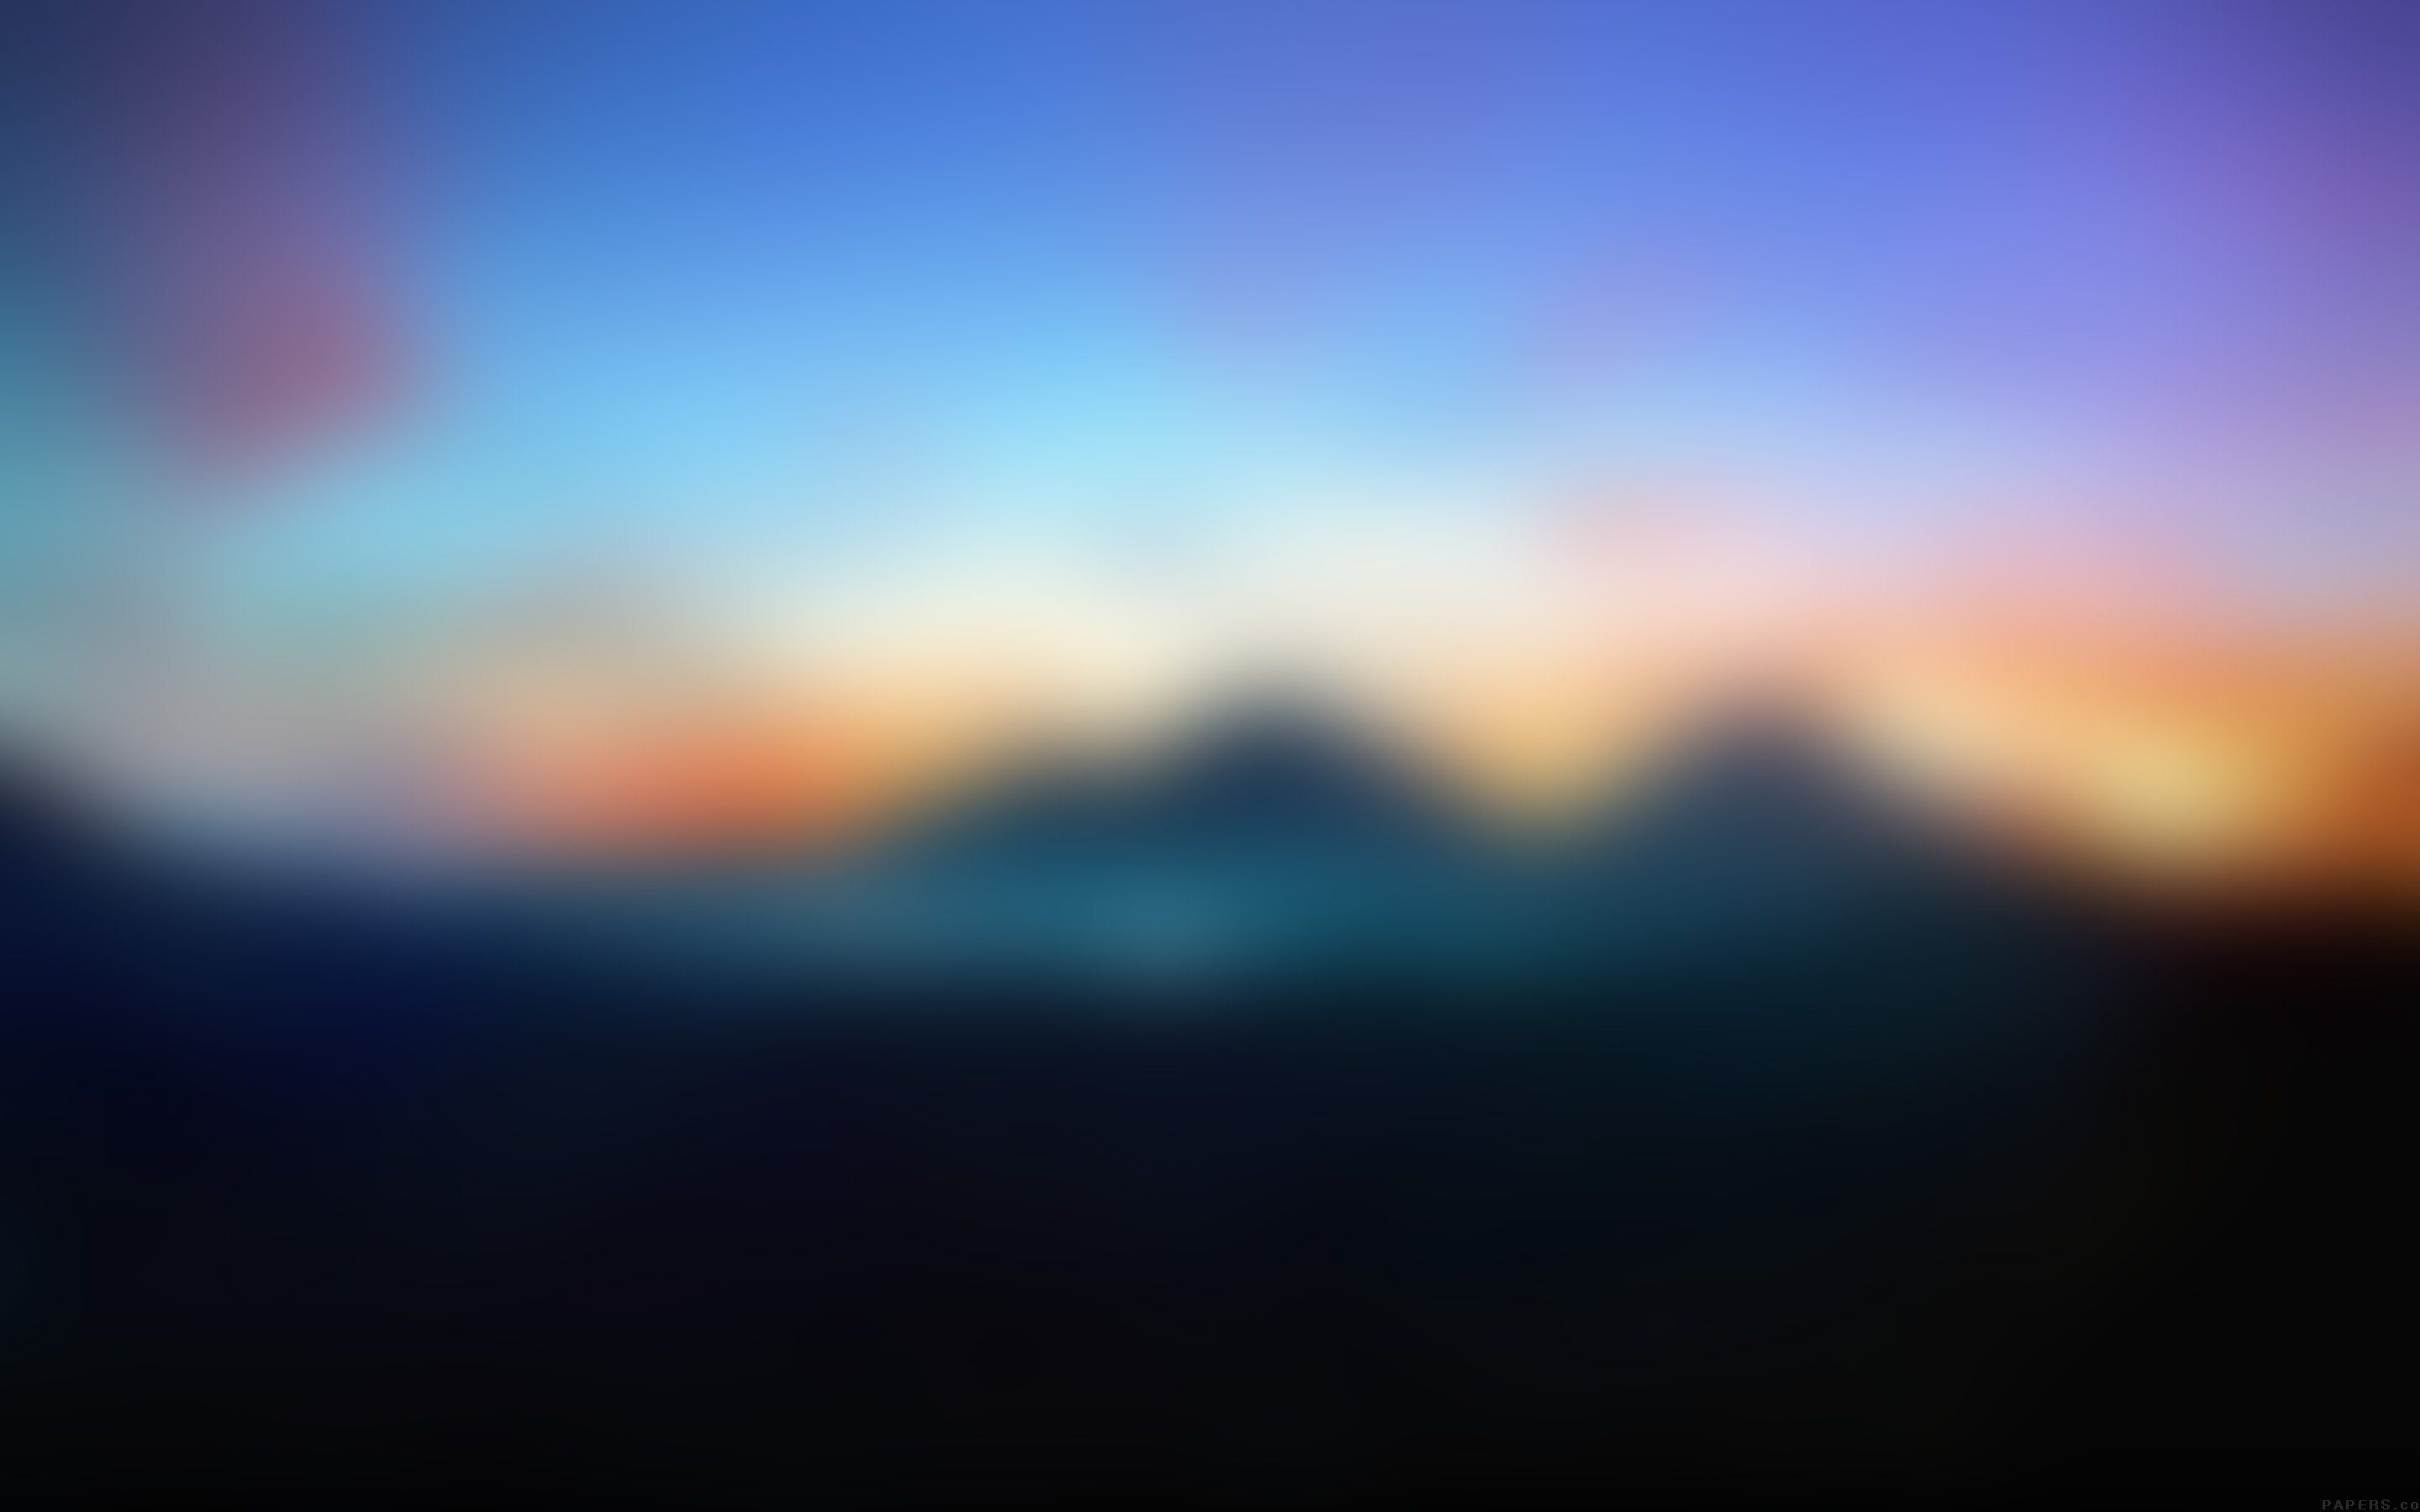 Blur wallpaper HD desktop background download iPhones Backgrounds